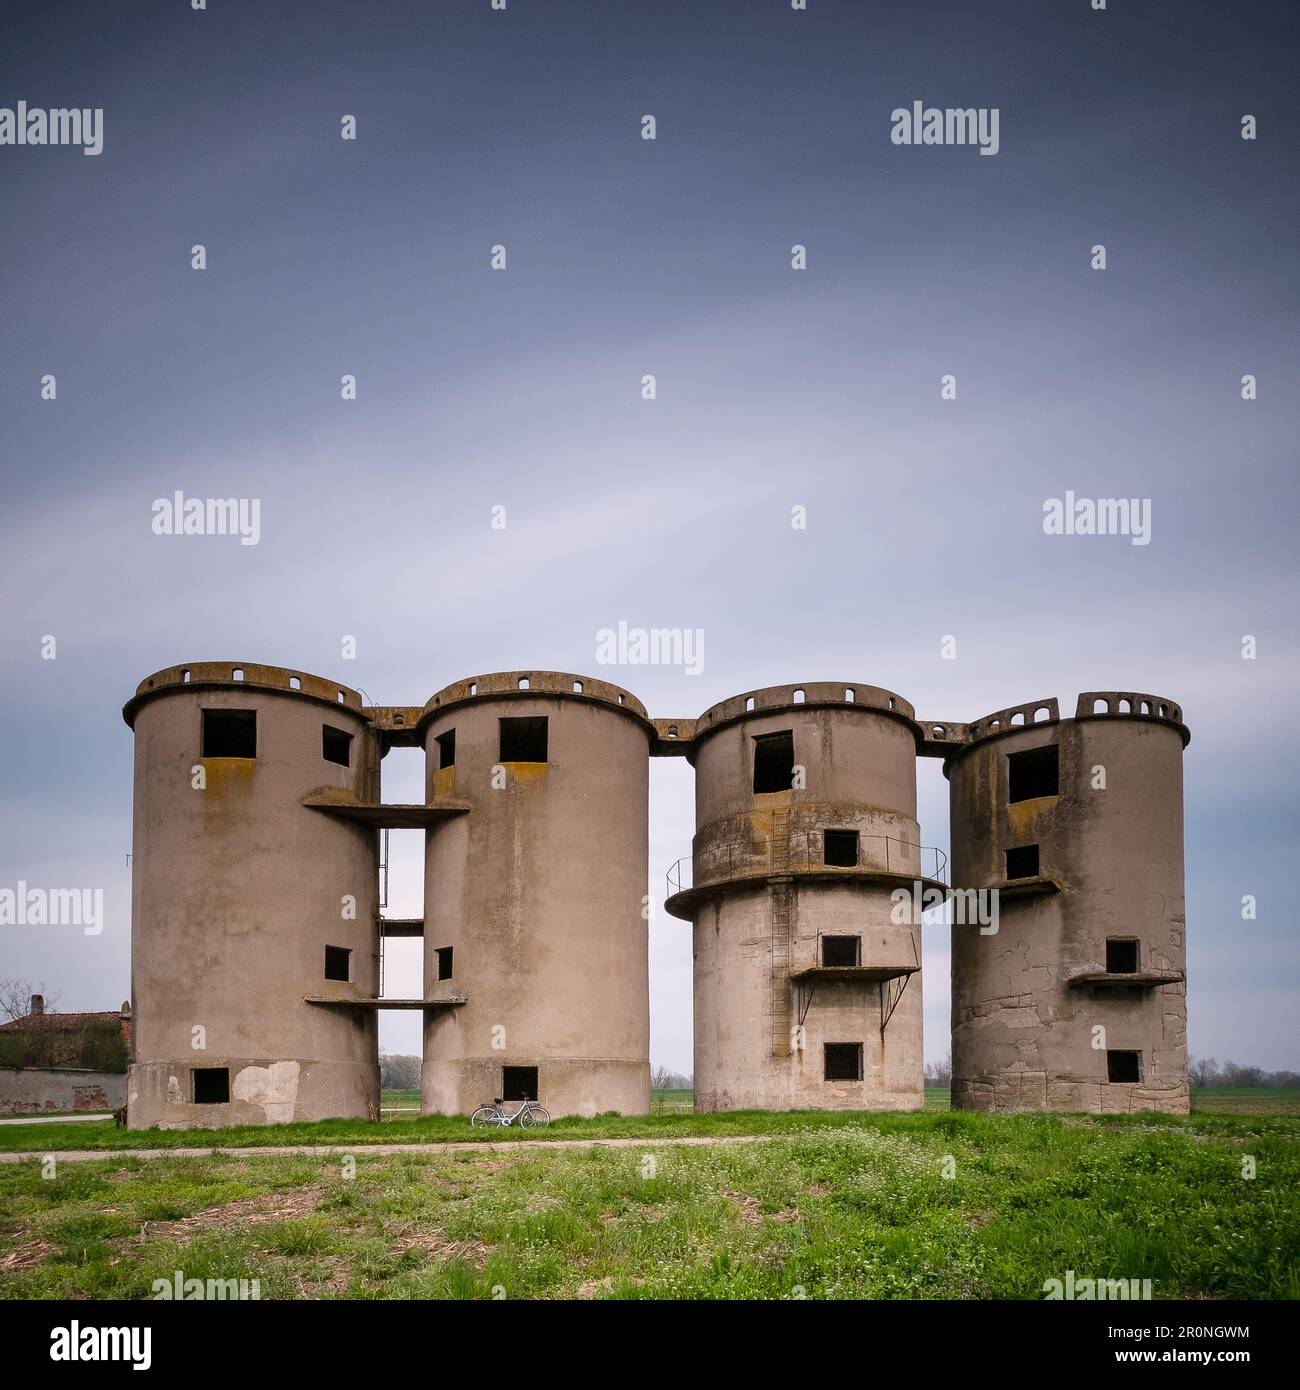 Old concrete grain silos, Drizzona, Province of Cremona, Italy Stock Photo